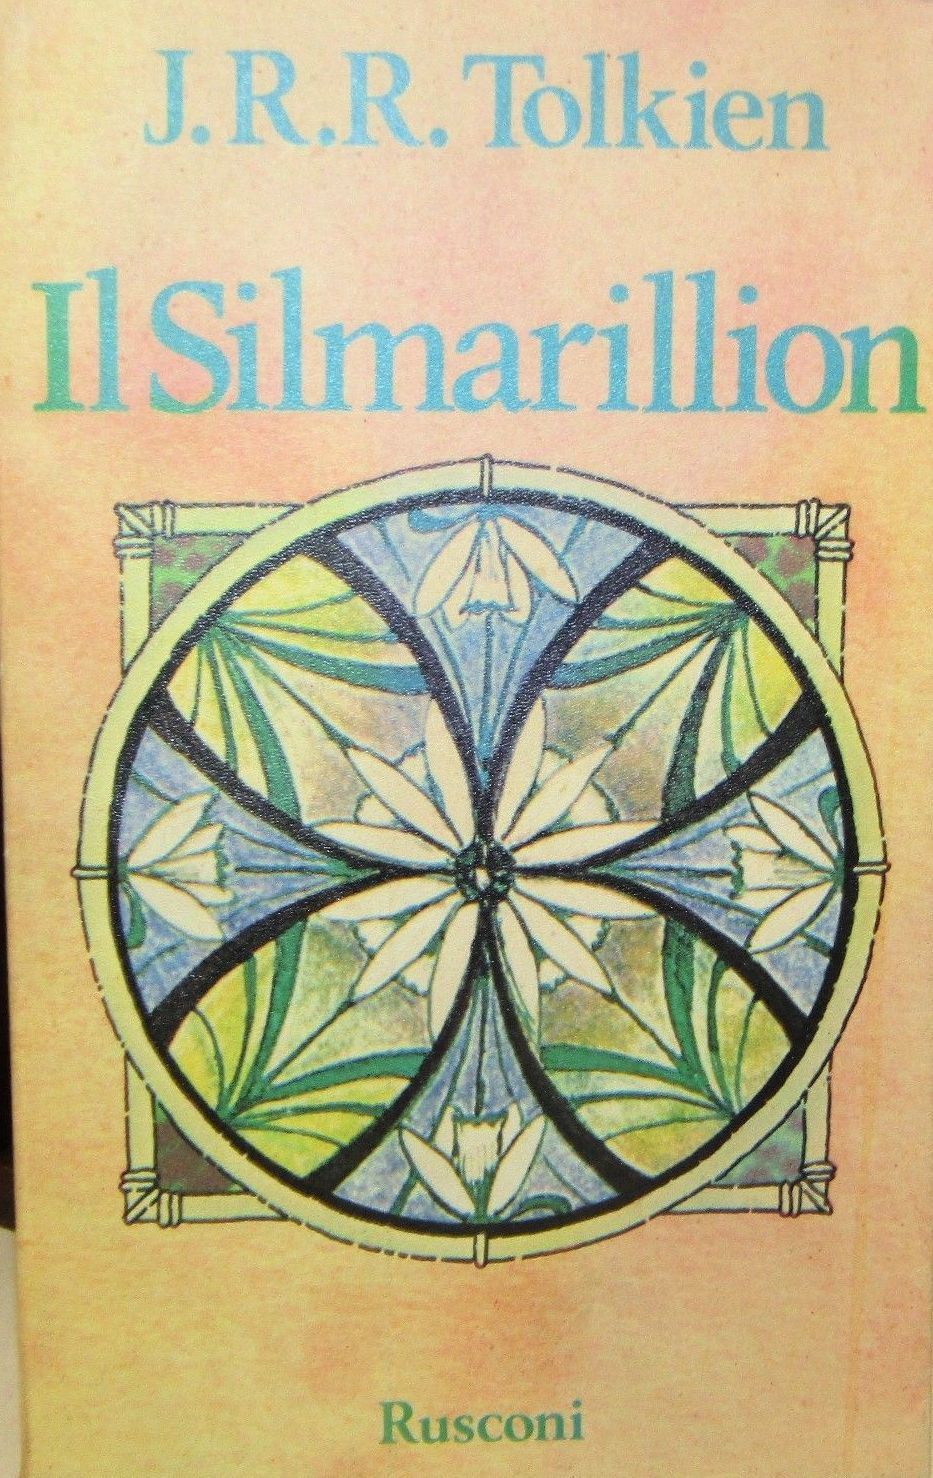 …su eBay c’è il “Silmarillion” di J. R. R. Tolkien del 1978 a 14 €